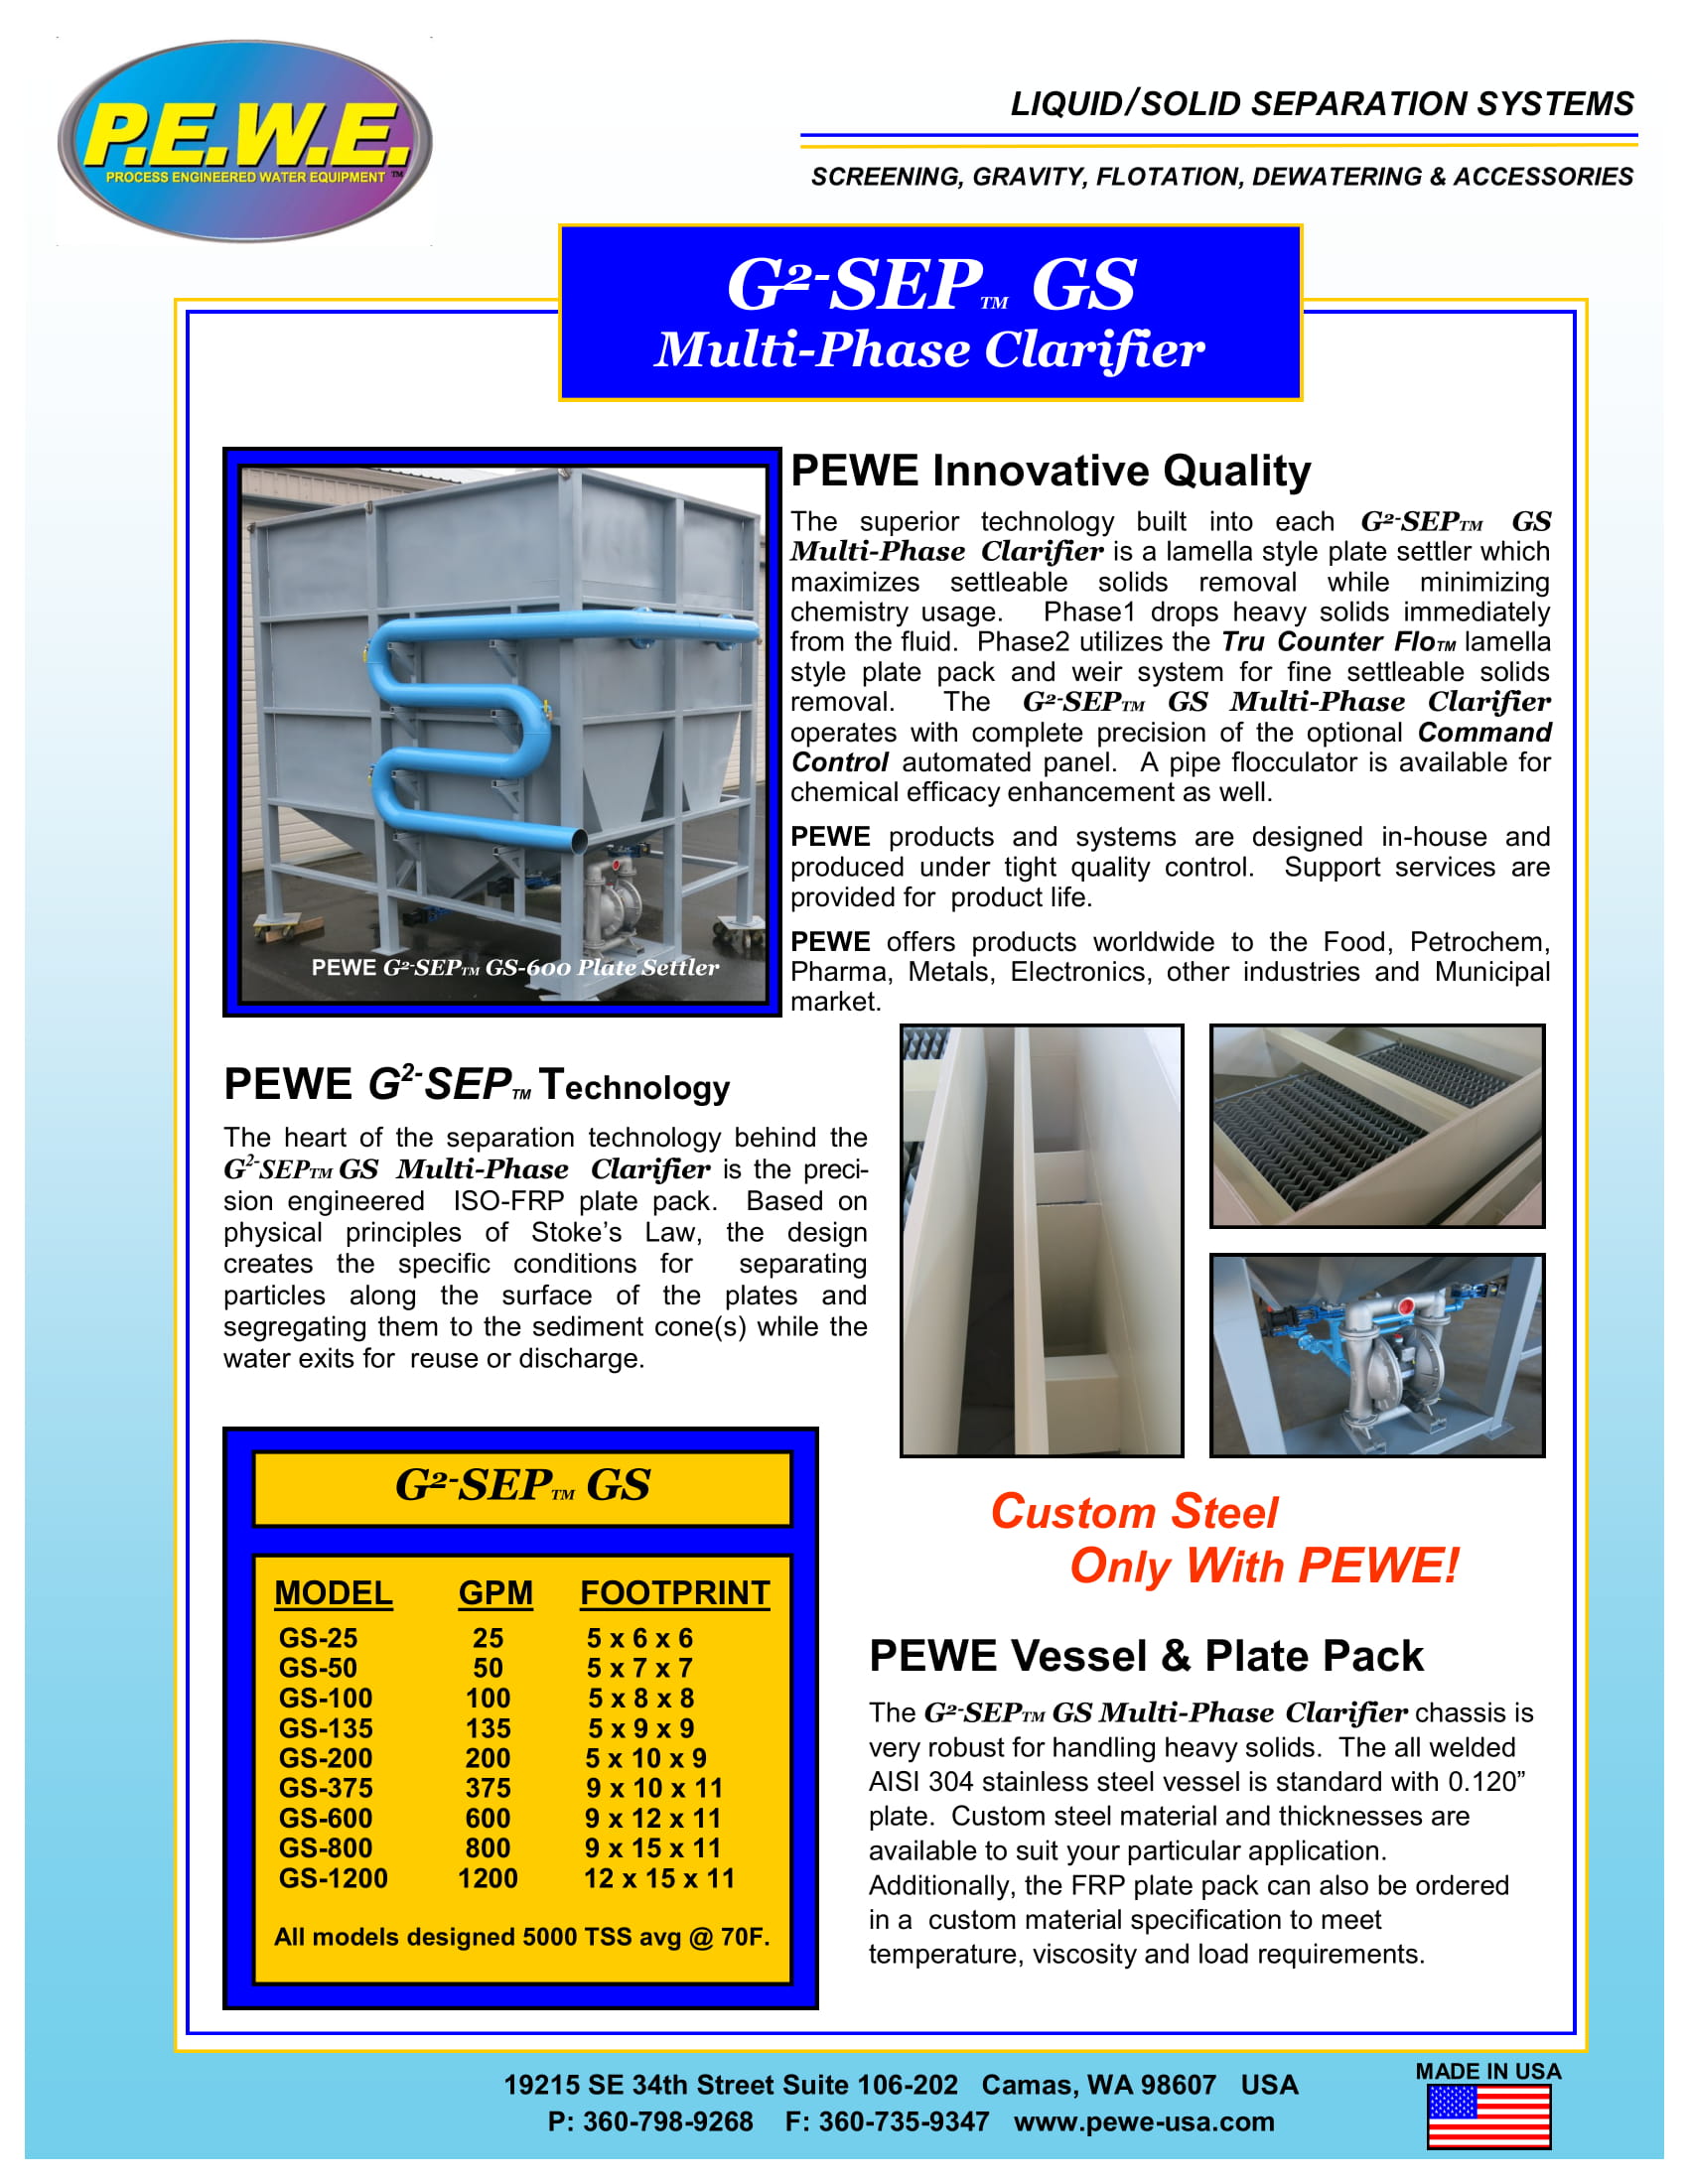 PEWE-G-SEP-GS-Brochure-032219-1.jpg